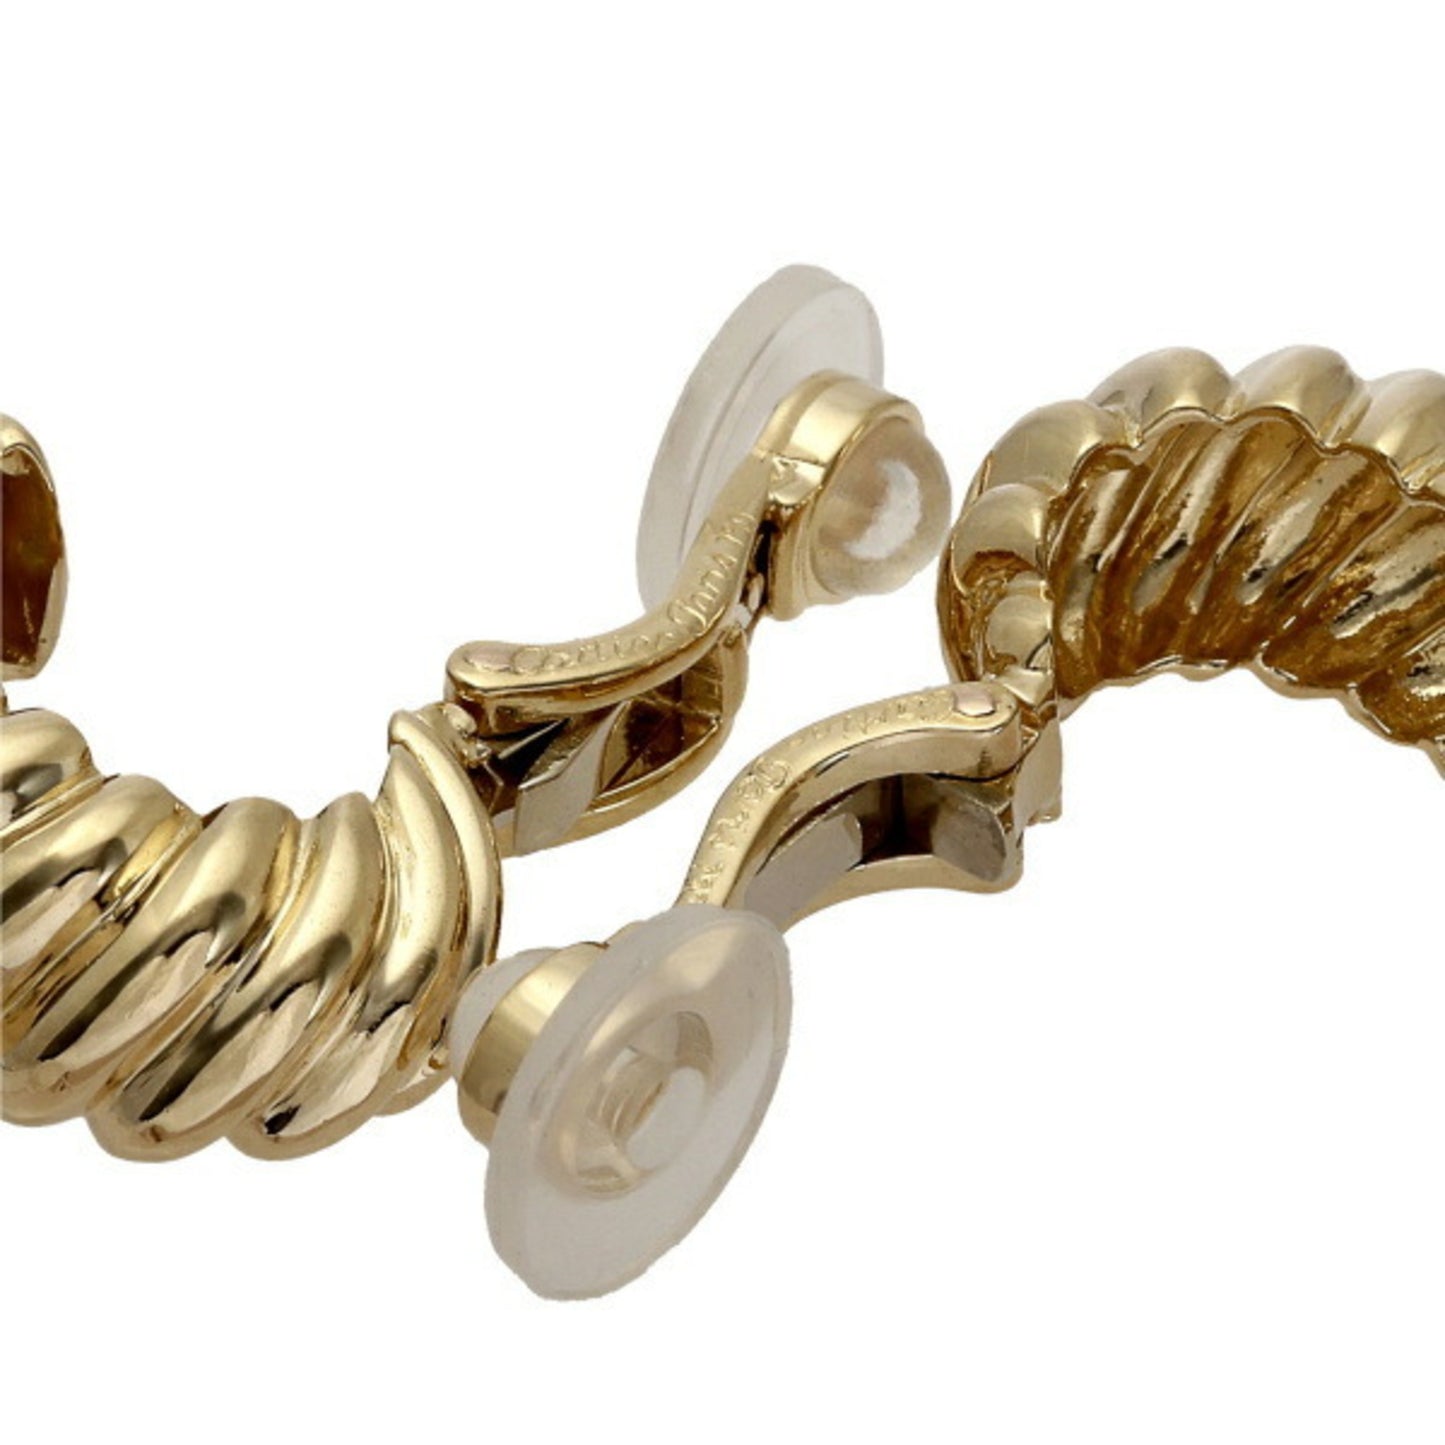 Cartier Women's 18K Yellow Gold Clip-On Earrings in Gold